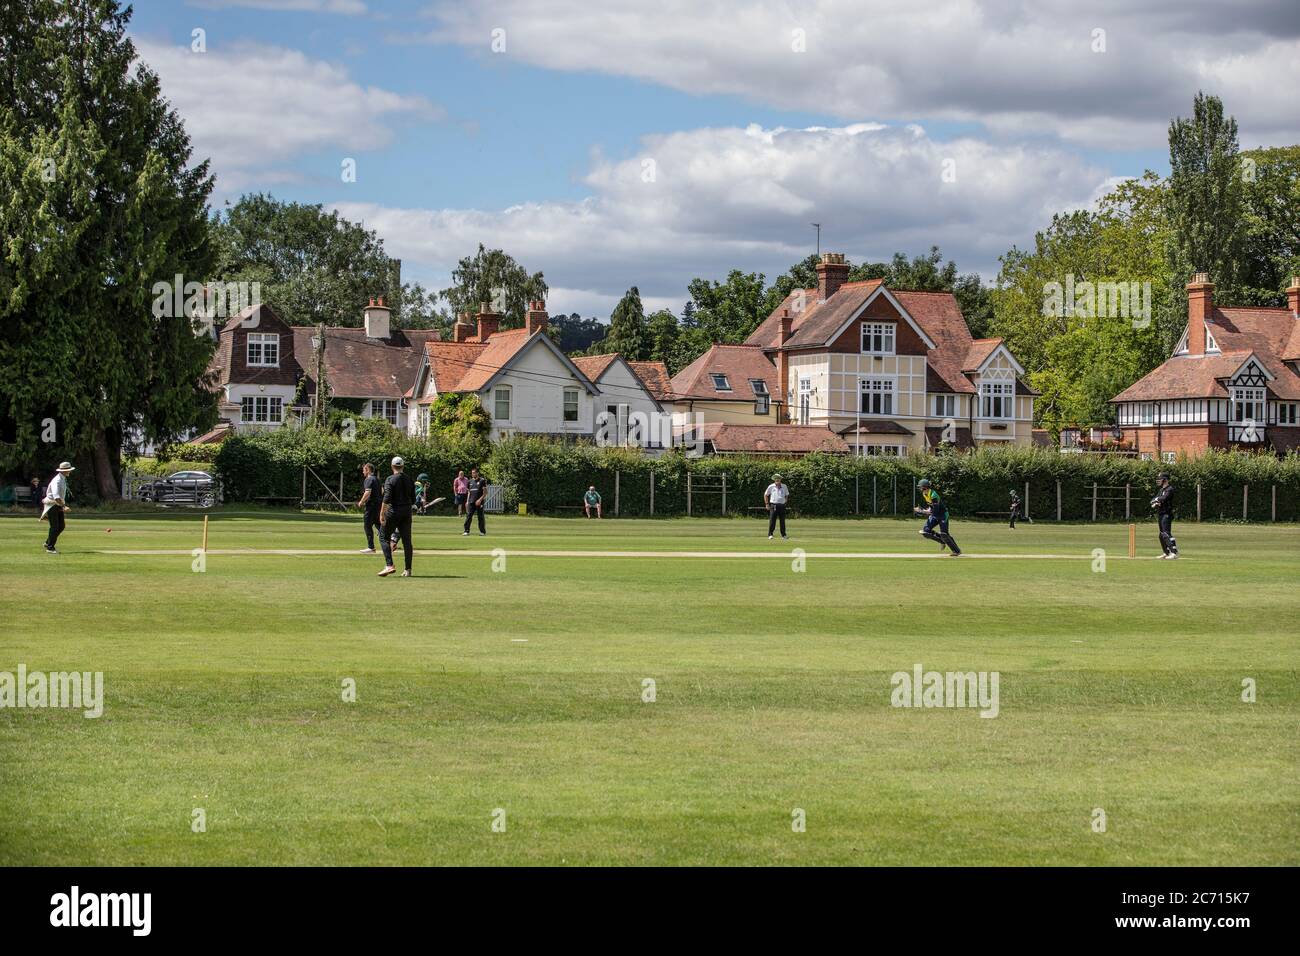 Les spectateurs retournent au club de cricket de Henley pour observer les joueurs de cricket de leur club local jouer à Wargrave alors que la saison commence après le verrouillage du coronavirus, au Royaume-Uni Banque D'Images